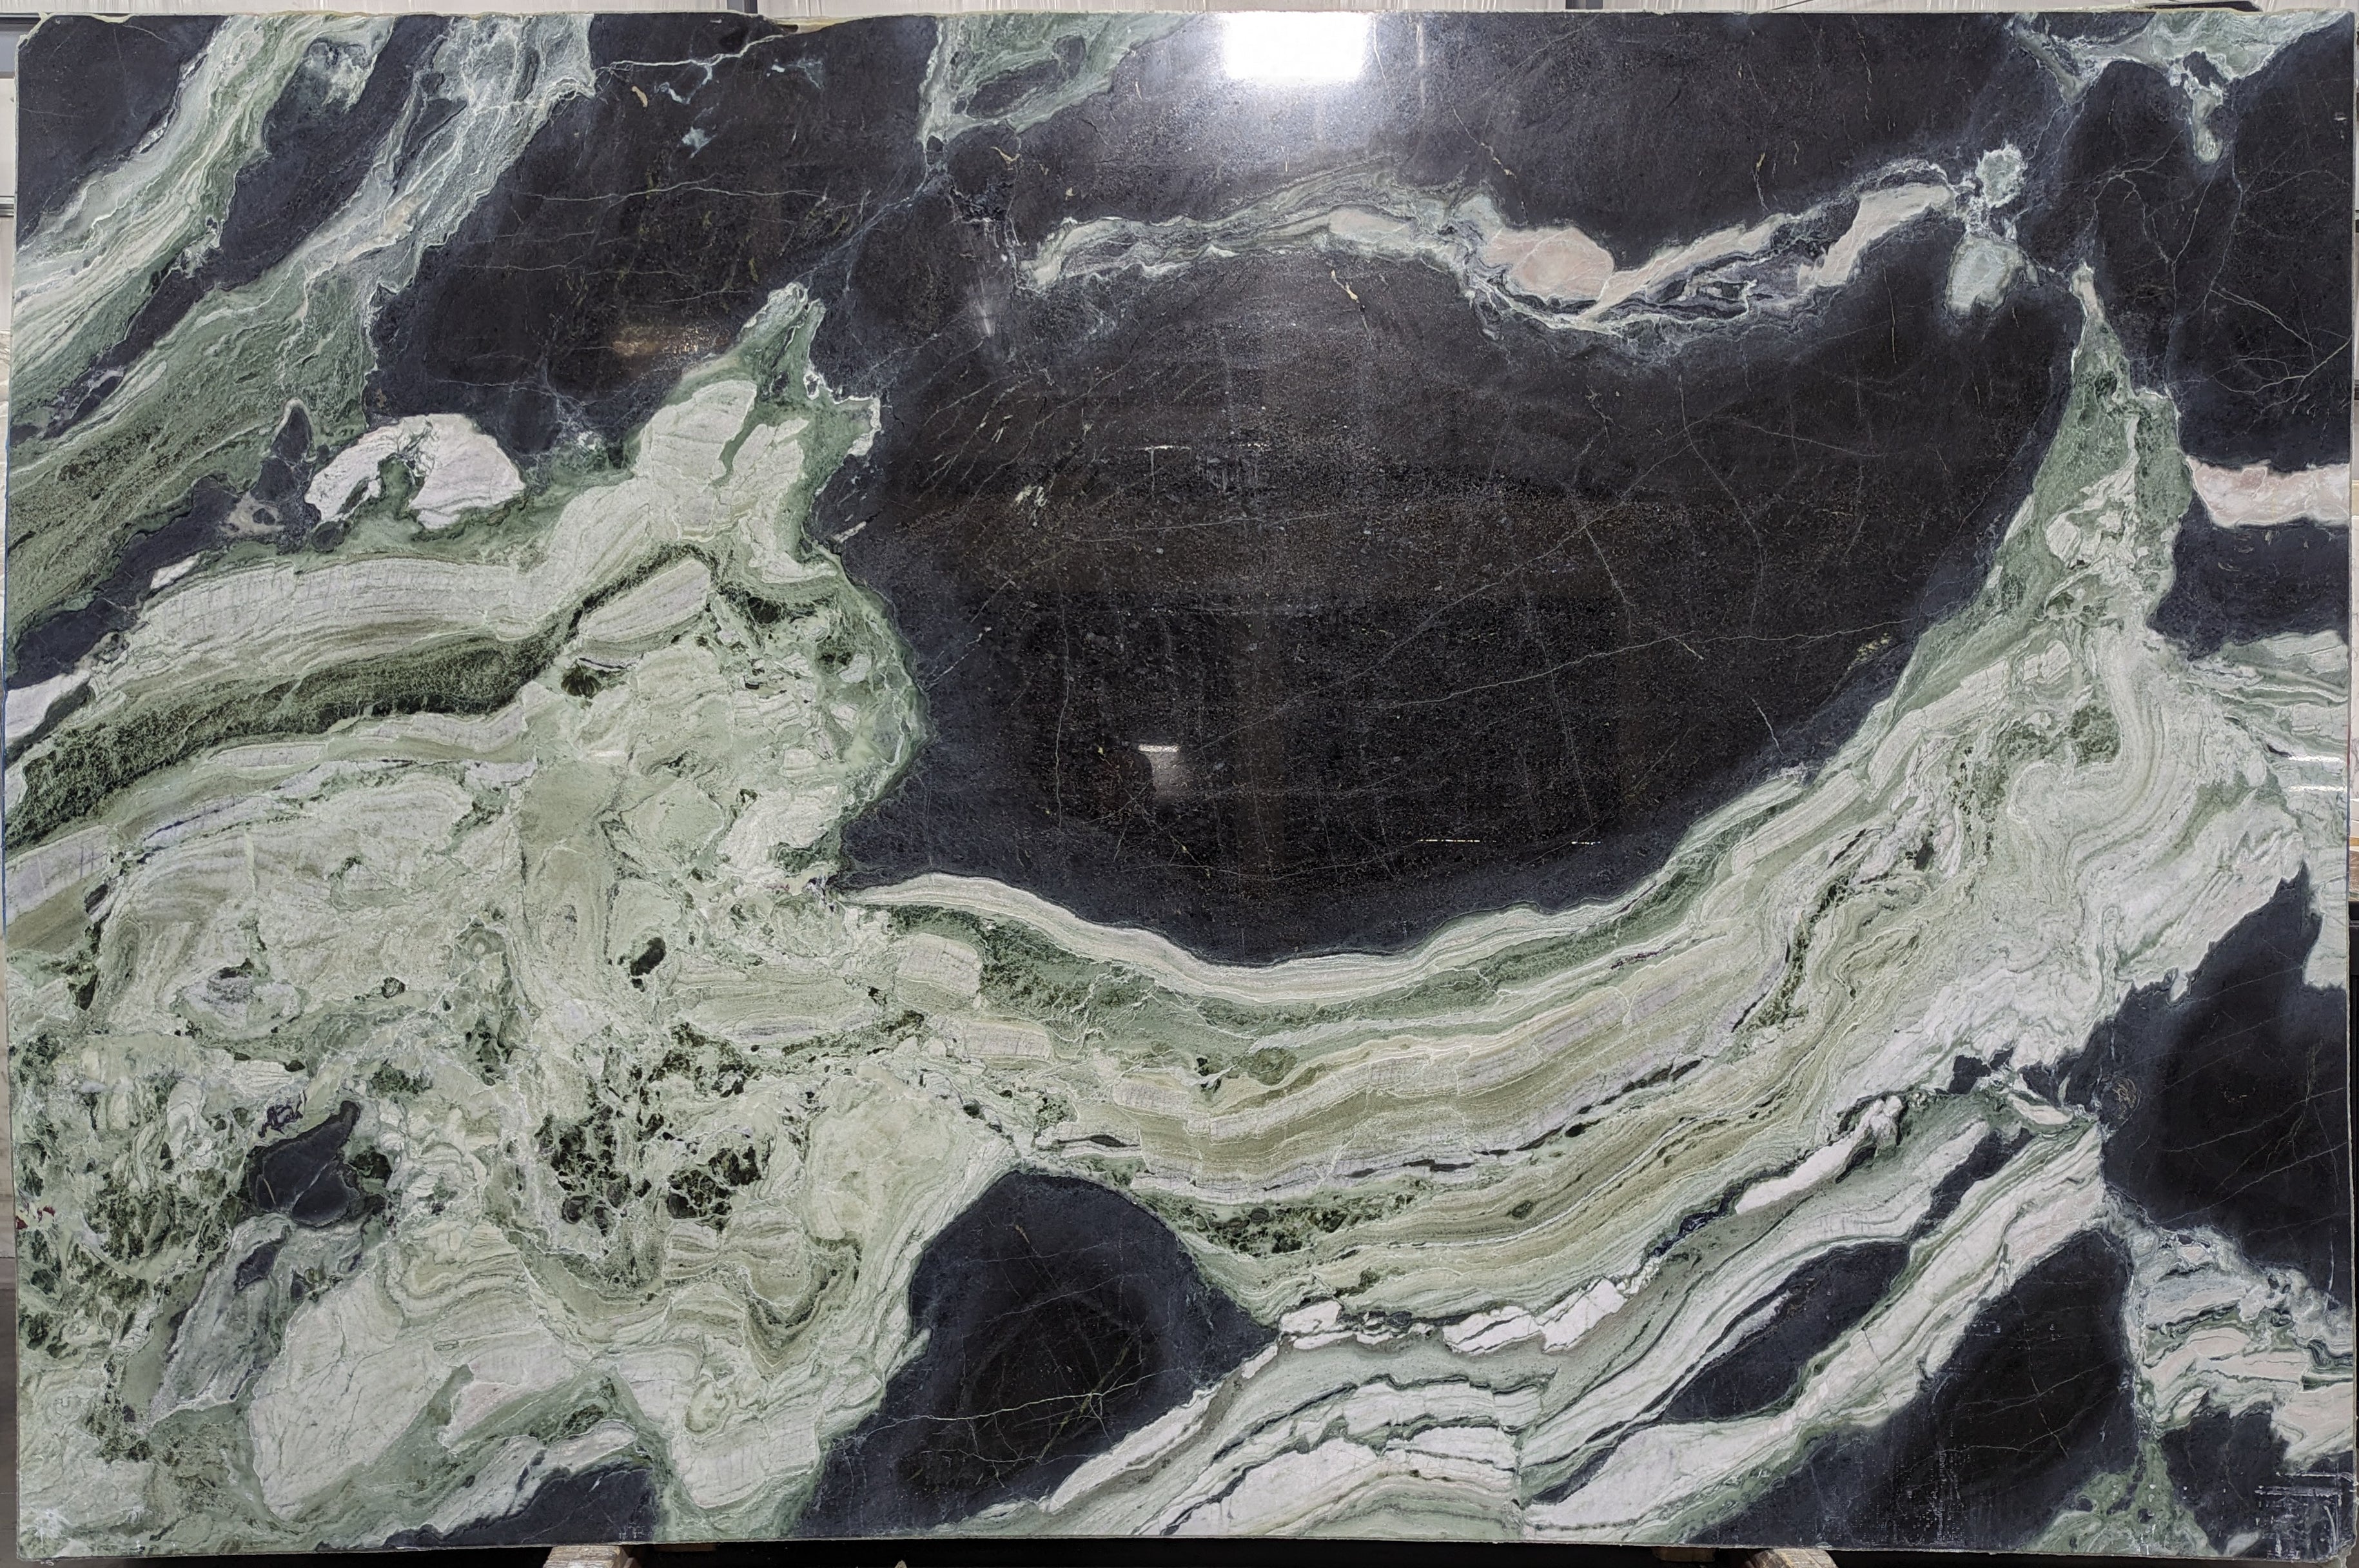  White Jade Marble Slab 3/4  Polished Stone - 38822#12 -  77x118 